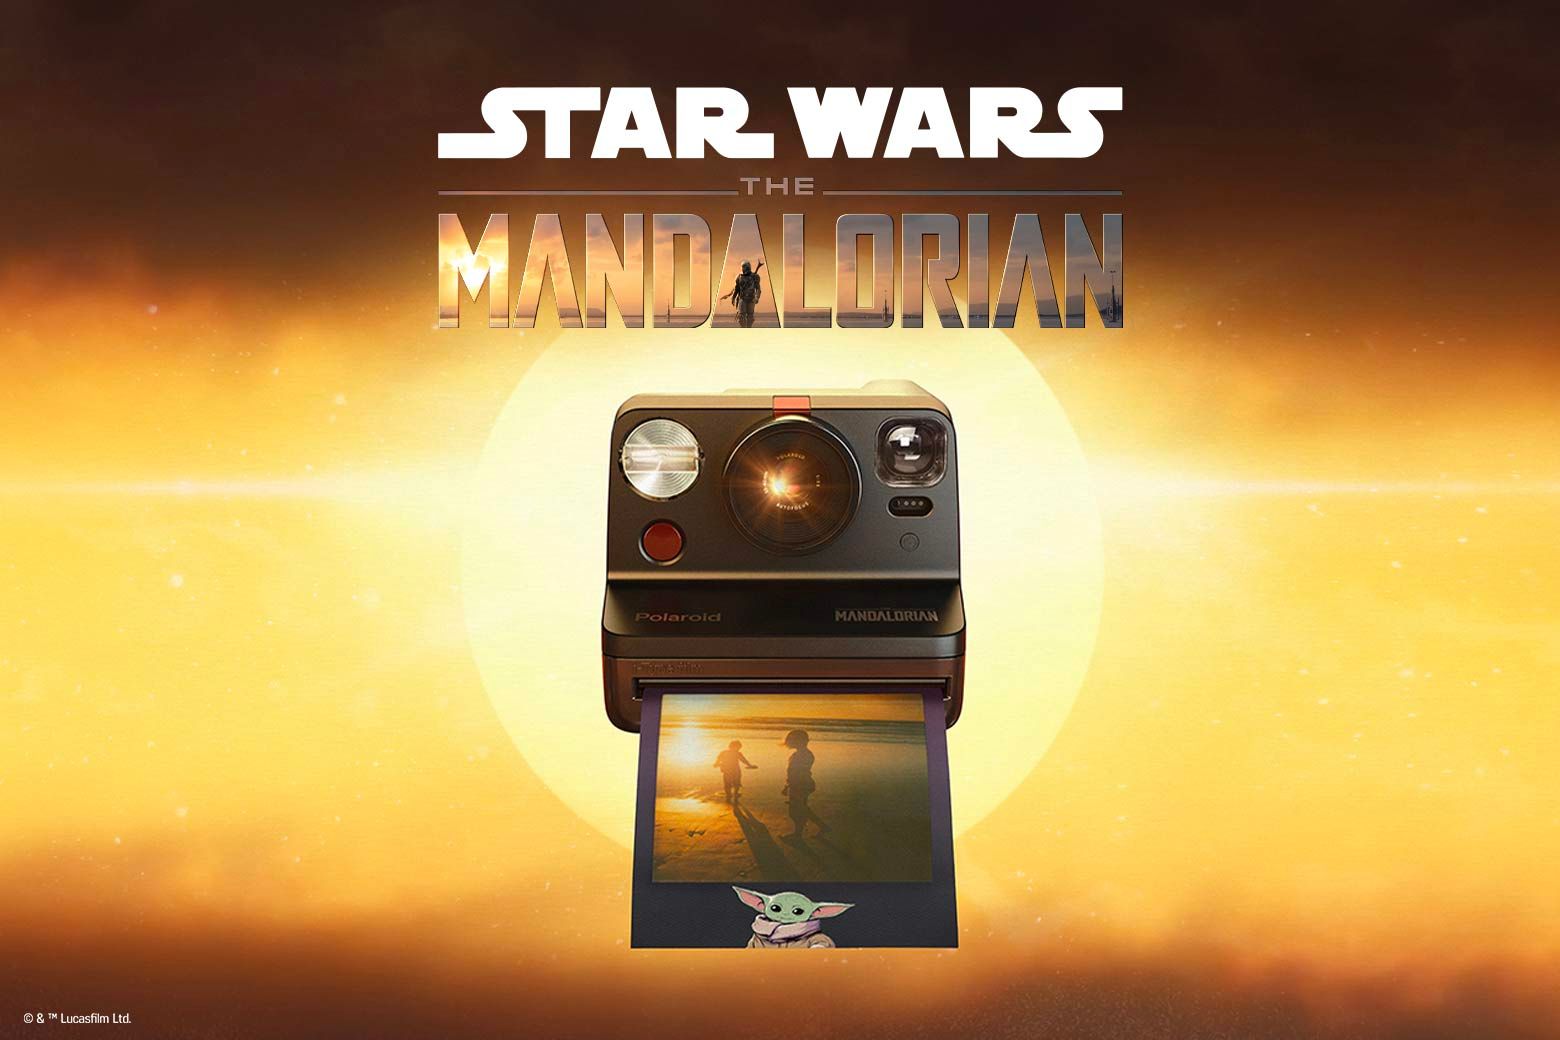 Polaroid Now The Mandalorian Edition